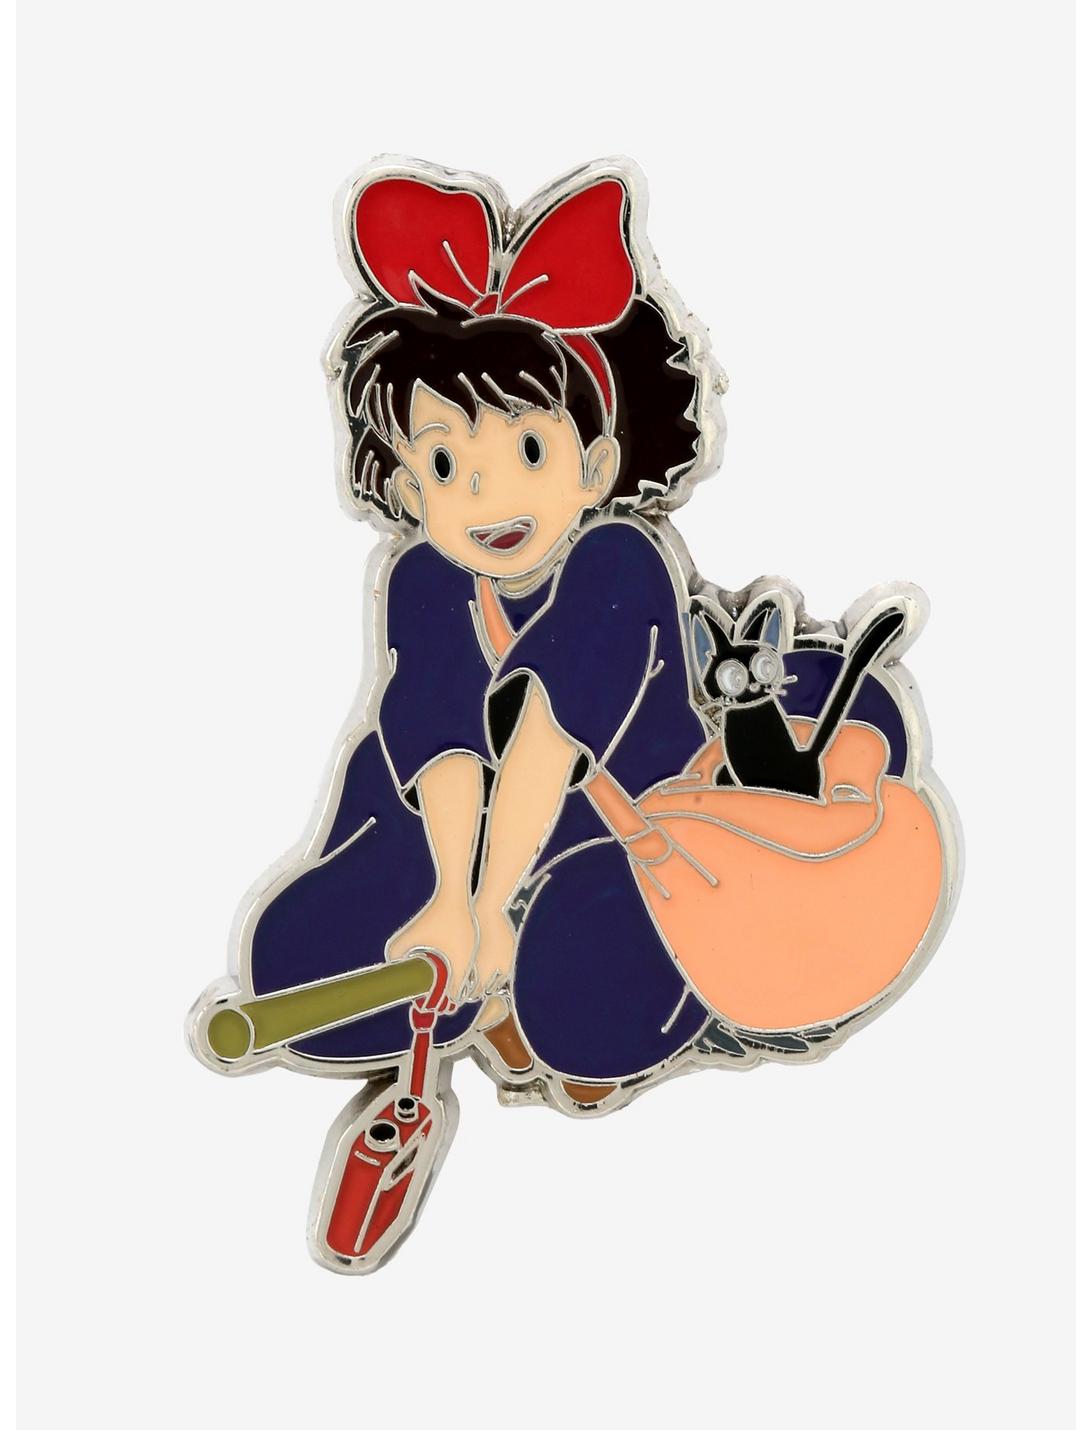 Studio Ghibli Kiki's Delivery Service Kiki Jiji Broom Enamel Pin, , hi-res